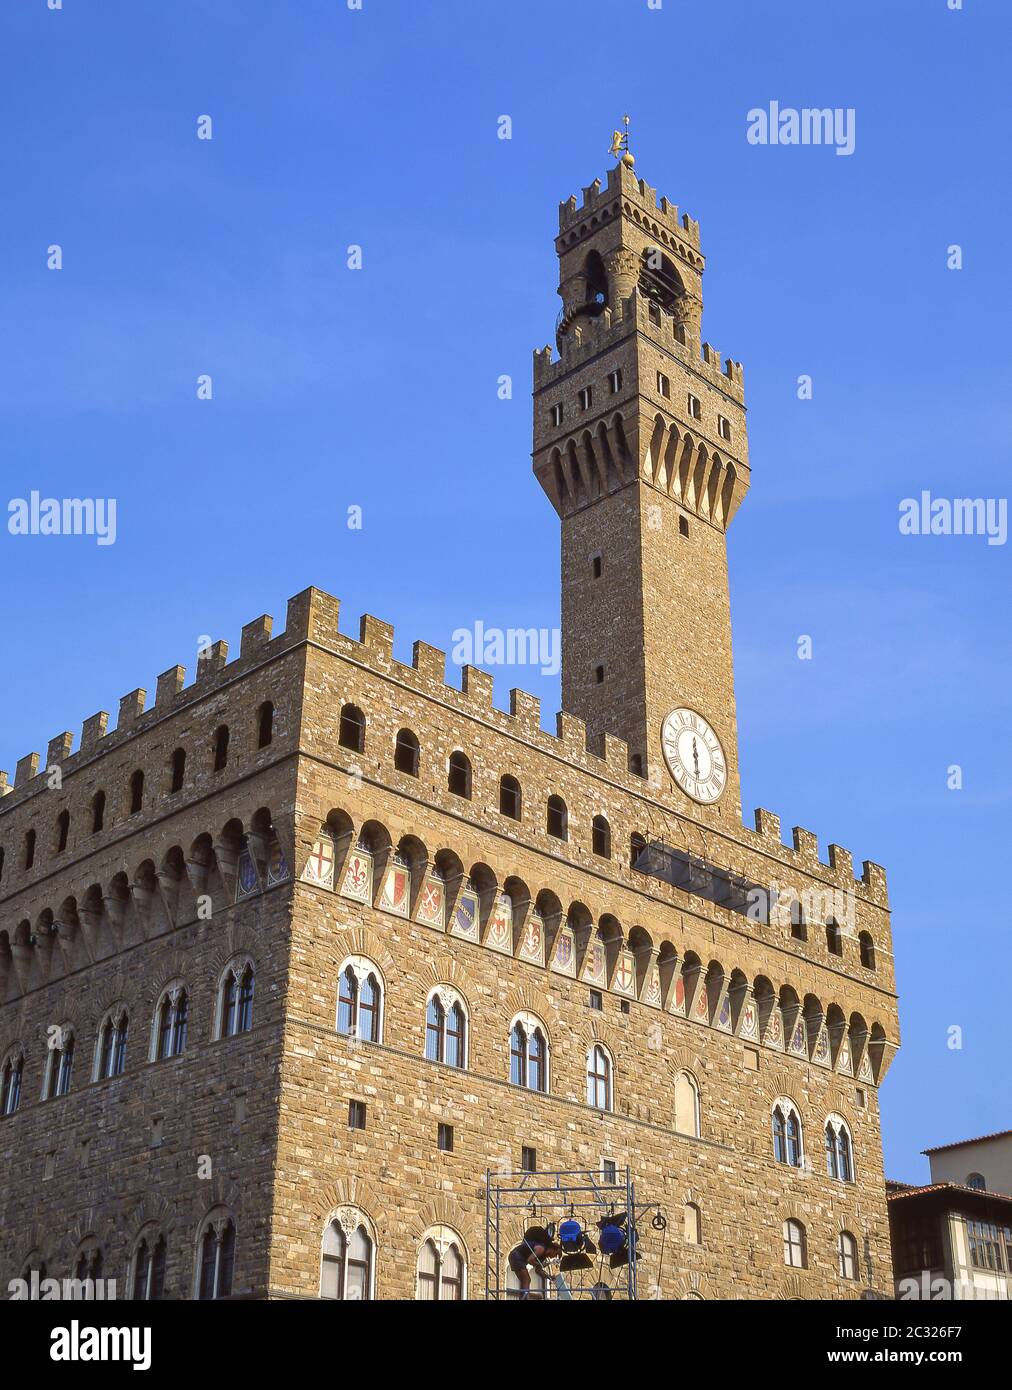 Palazzo Vecchio, Piazza della Signoria, Florence (Firenze), Tuscany Region, Italy Stock Photo